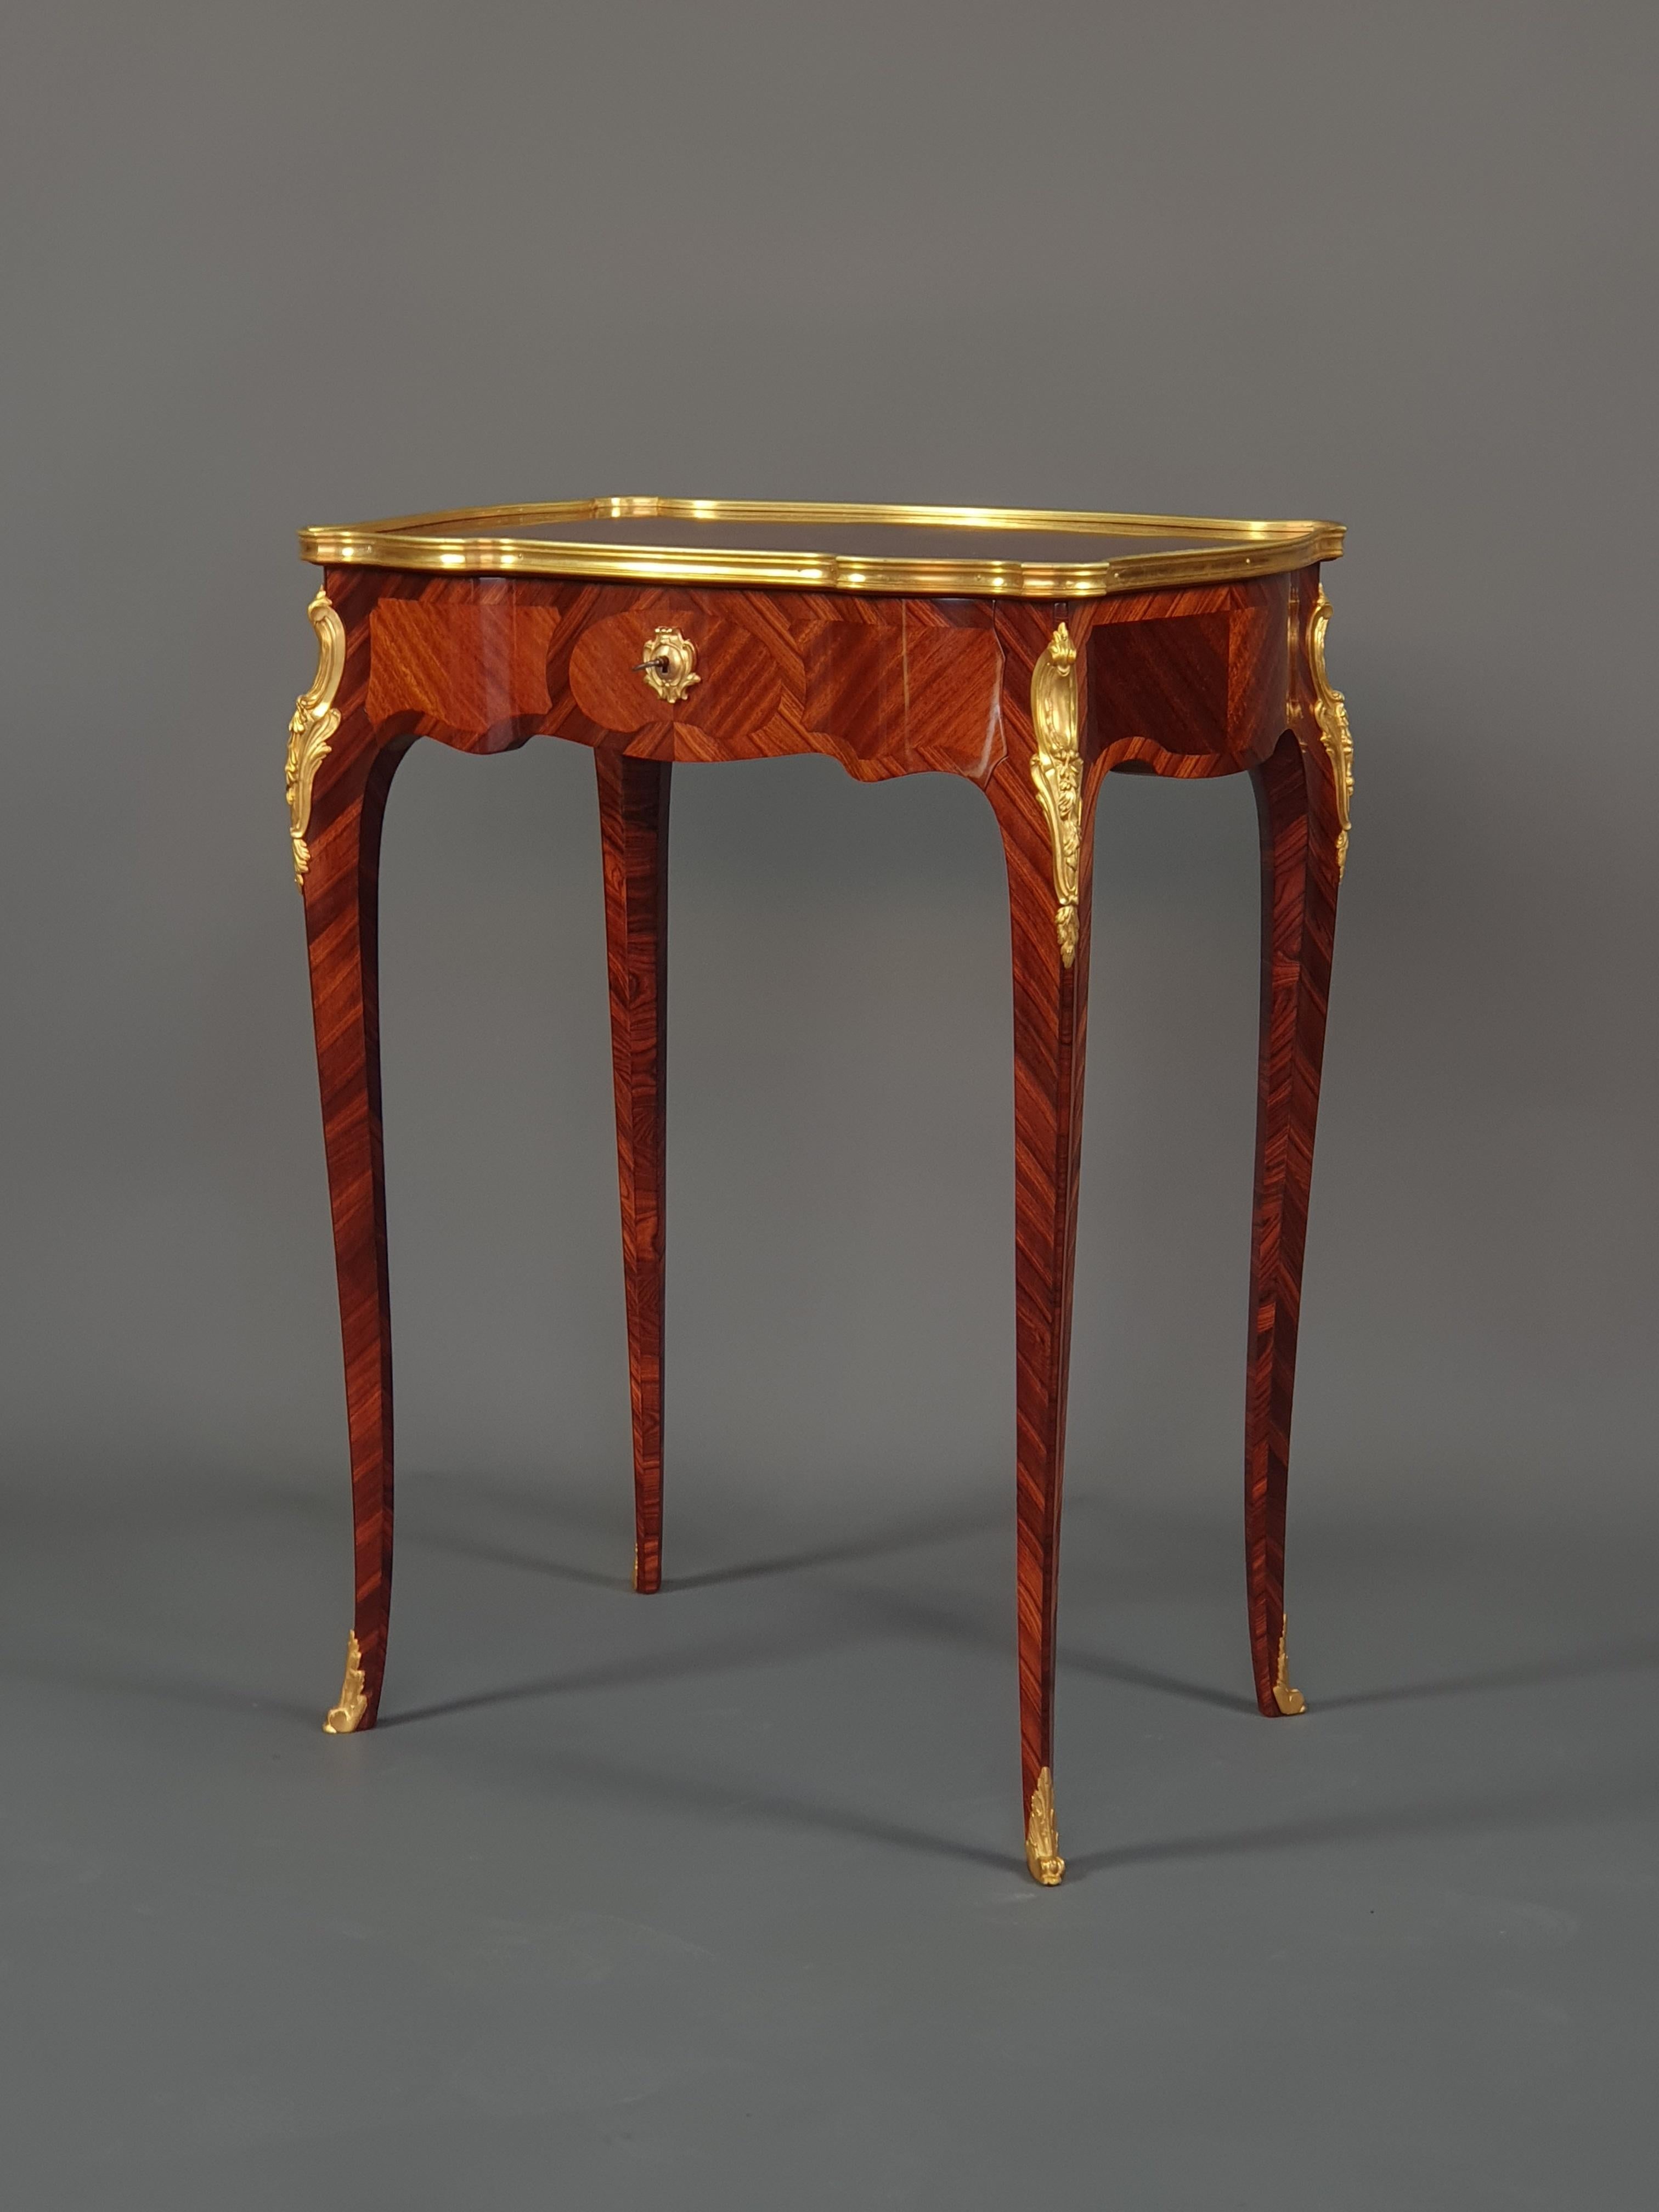 Sehr elegante Louis XV-Stil table d'appoint in Palisander und Mahagoni Intarsien in Reserven, sehr fein ziseliert vergoldeter Bronze Ornamentik. Vier leicht geschwungene Beine präsentieren eine Platte mit gewundenen und asymmetrischen